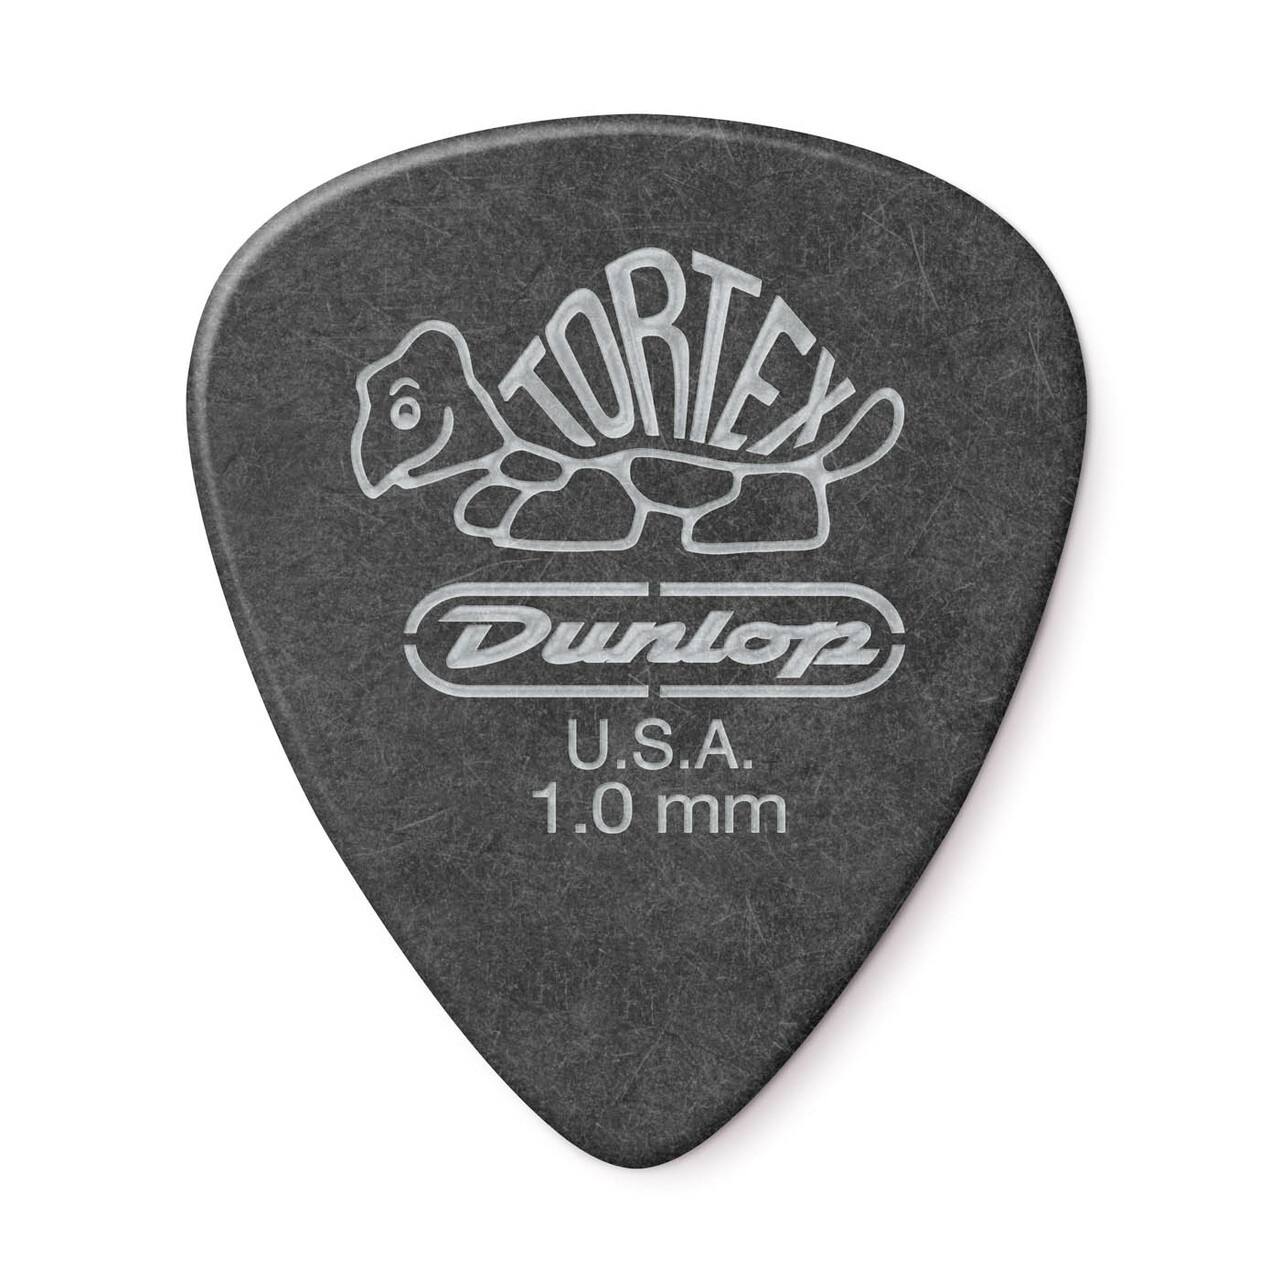 Dunlop Tortex Pitch Black Standard Picks (12-Pack), 1.0mm